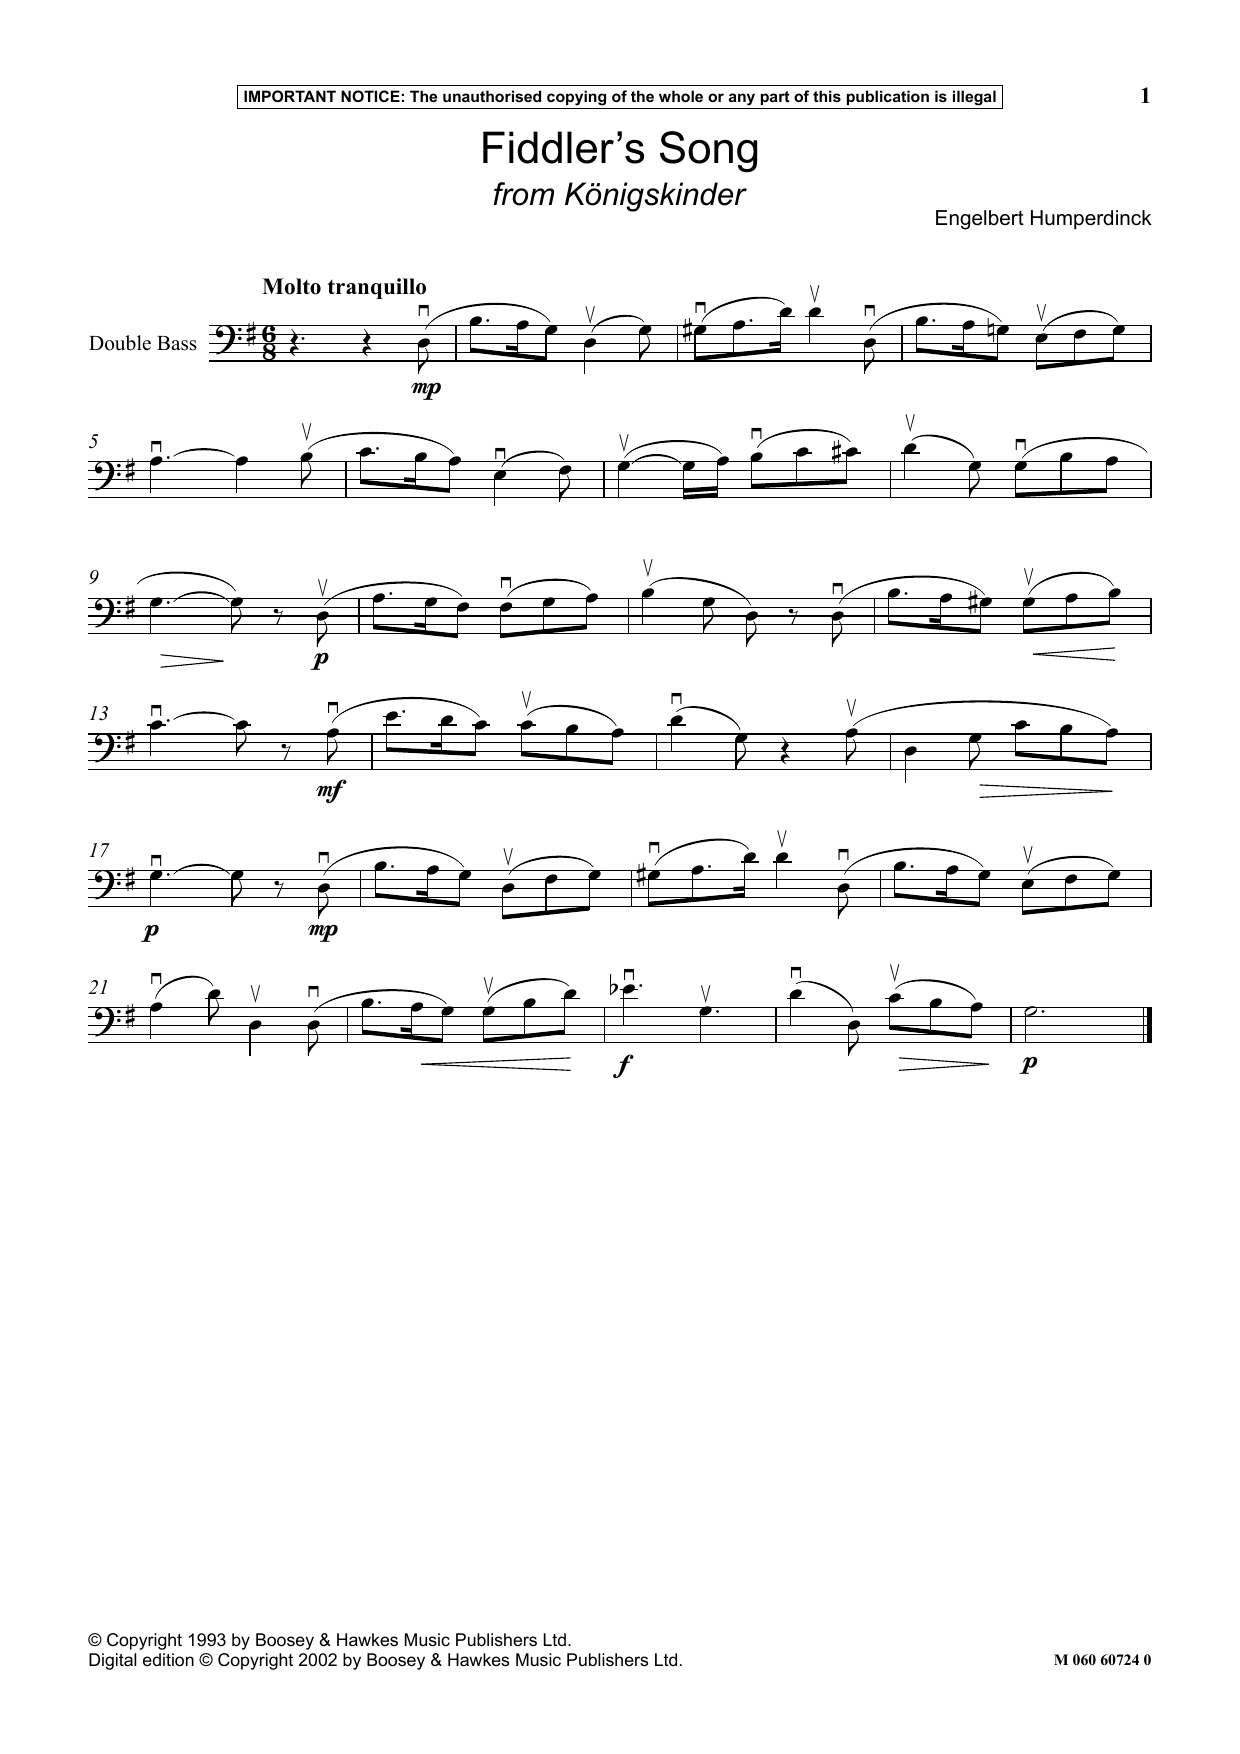 Engelbert Humperdinck Fiddler's Song (from Konigskinder) Sheet Music Notes & Chords for Instrumental Solo - Download or Print PDF